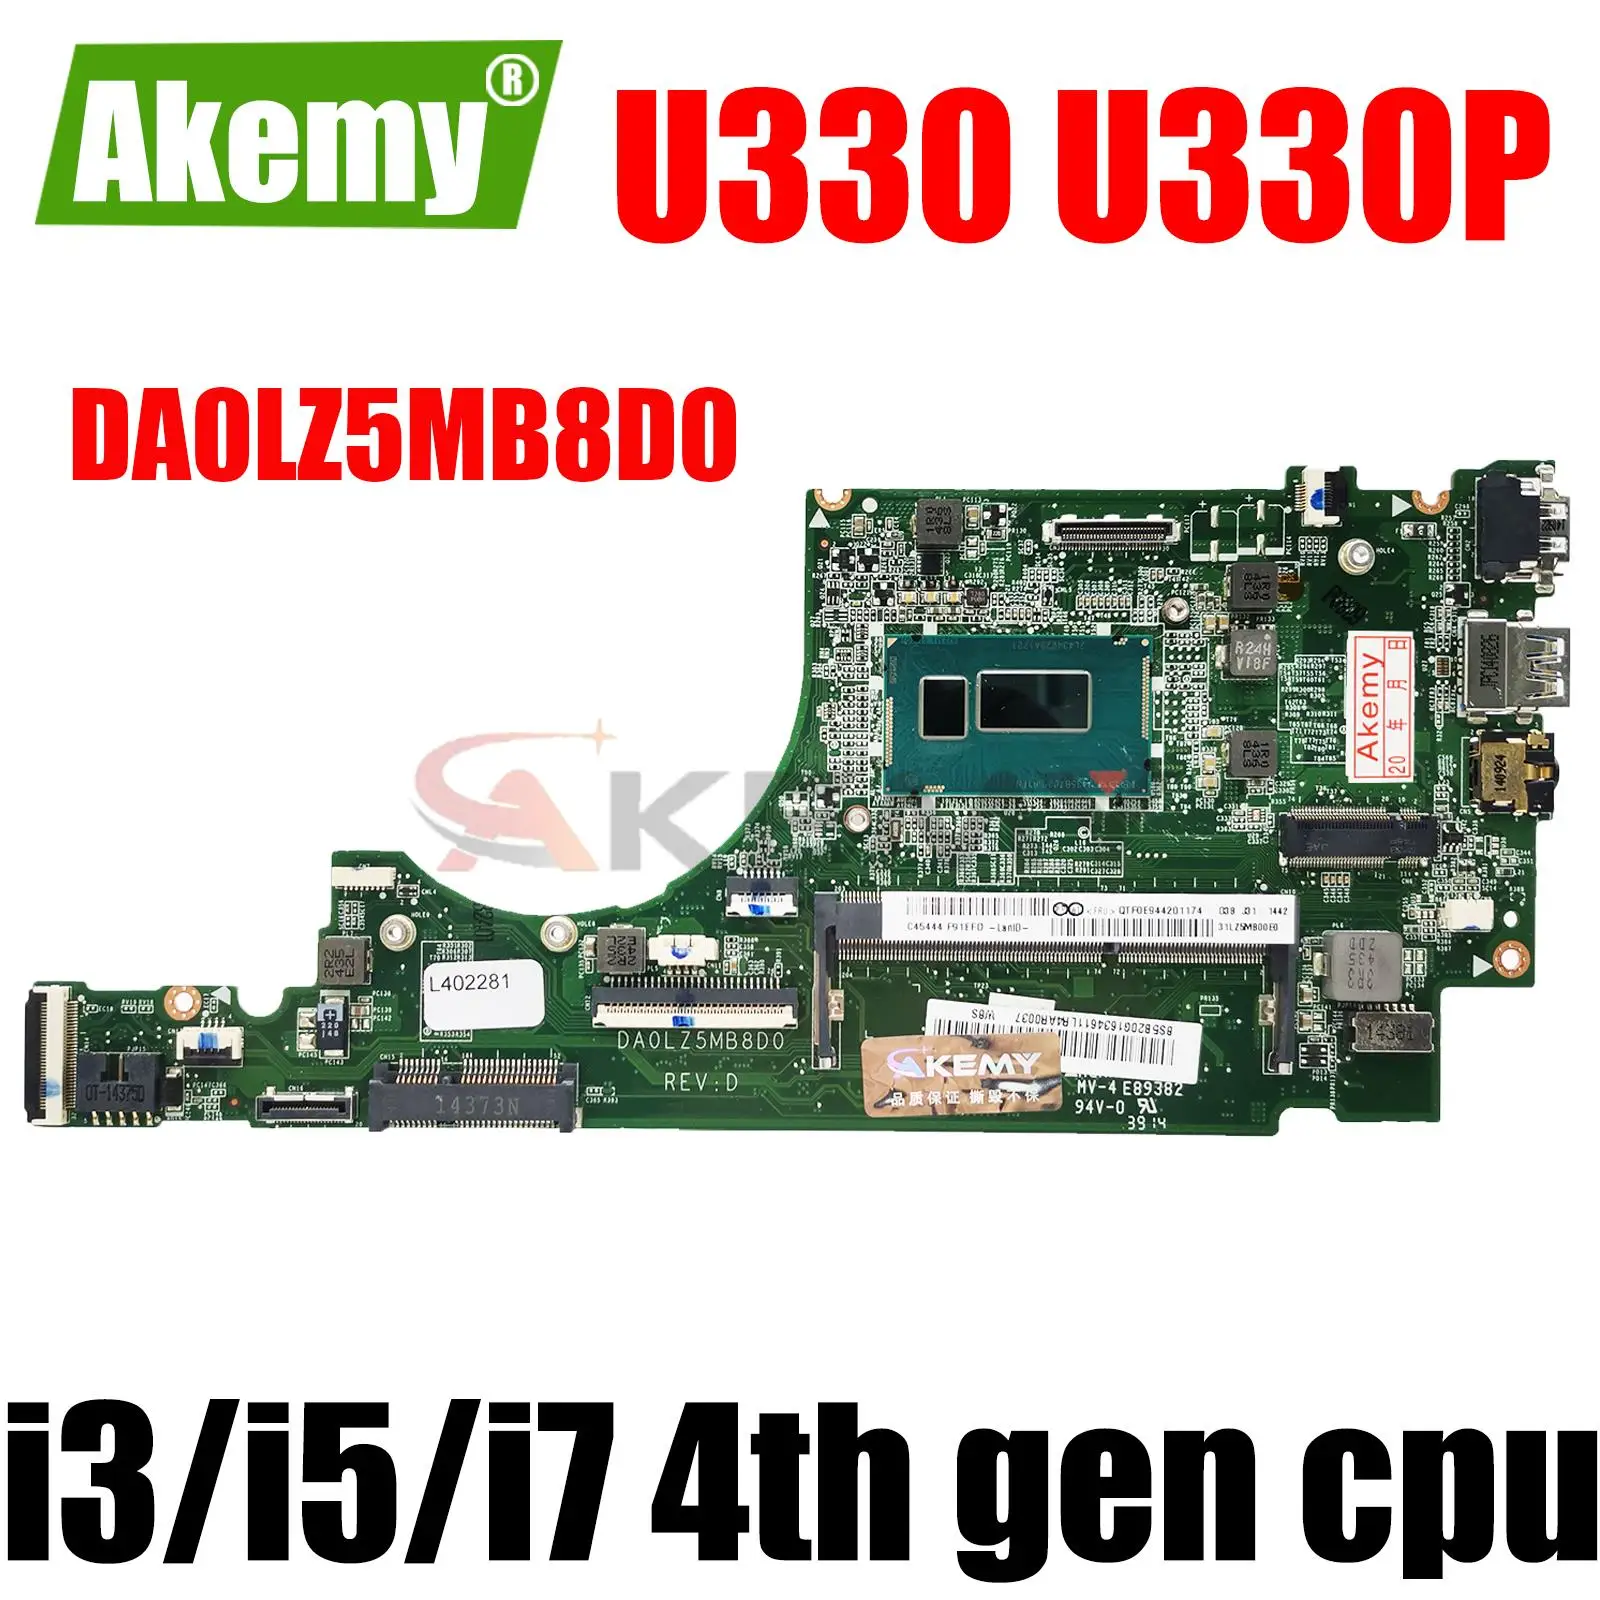 

For Applicable Lenovo U330 U330P Notebook Motherboard DA0LZ5MB8D0 With i3/i5/i7 4th gen cpu. DDR3 100% test work